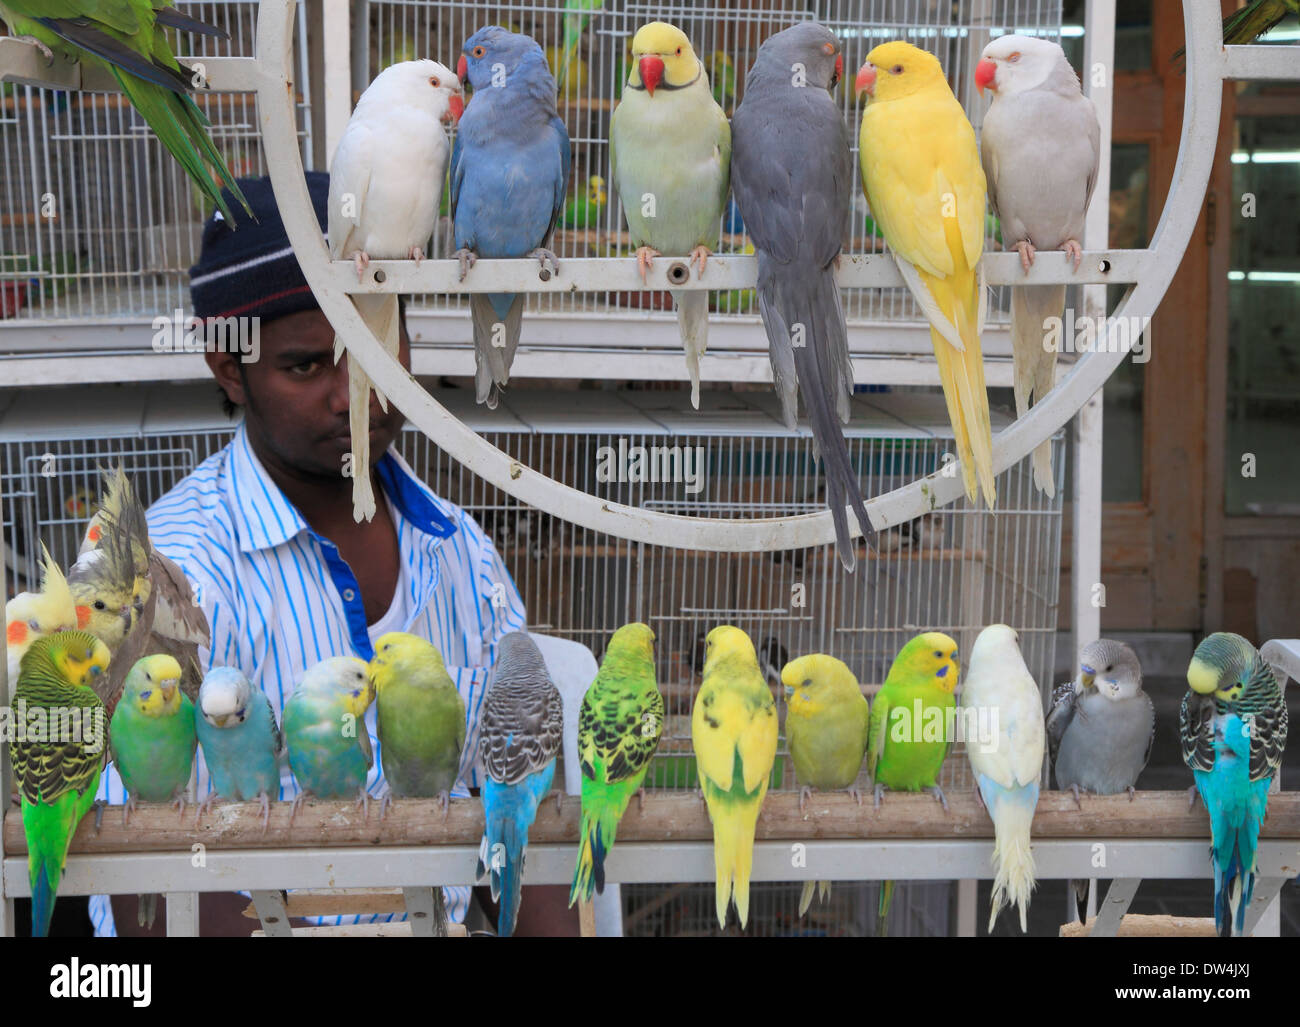 Qatar, Doha, Souq Waqif, bird market, Stock Photo